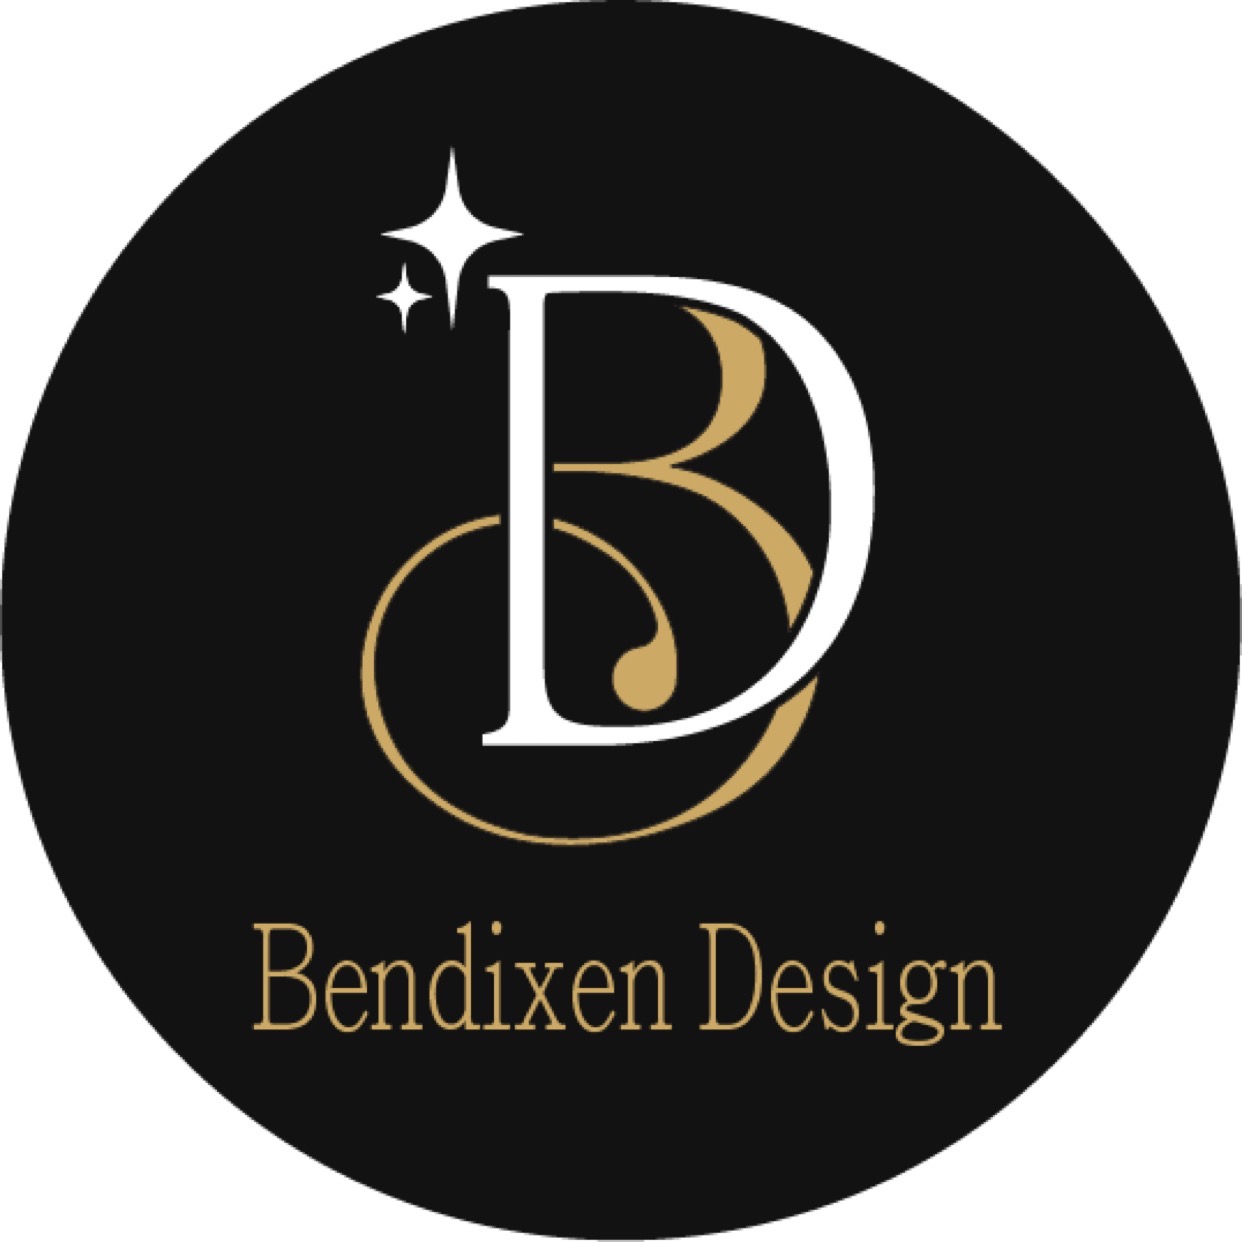 Bendixen Design